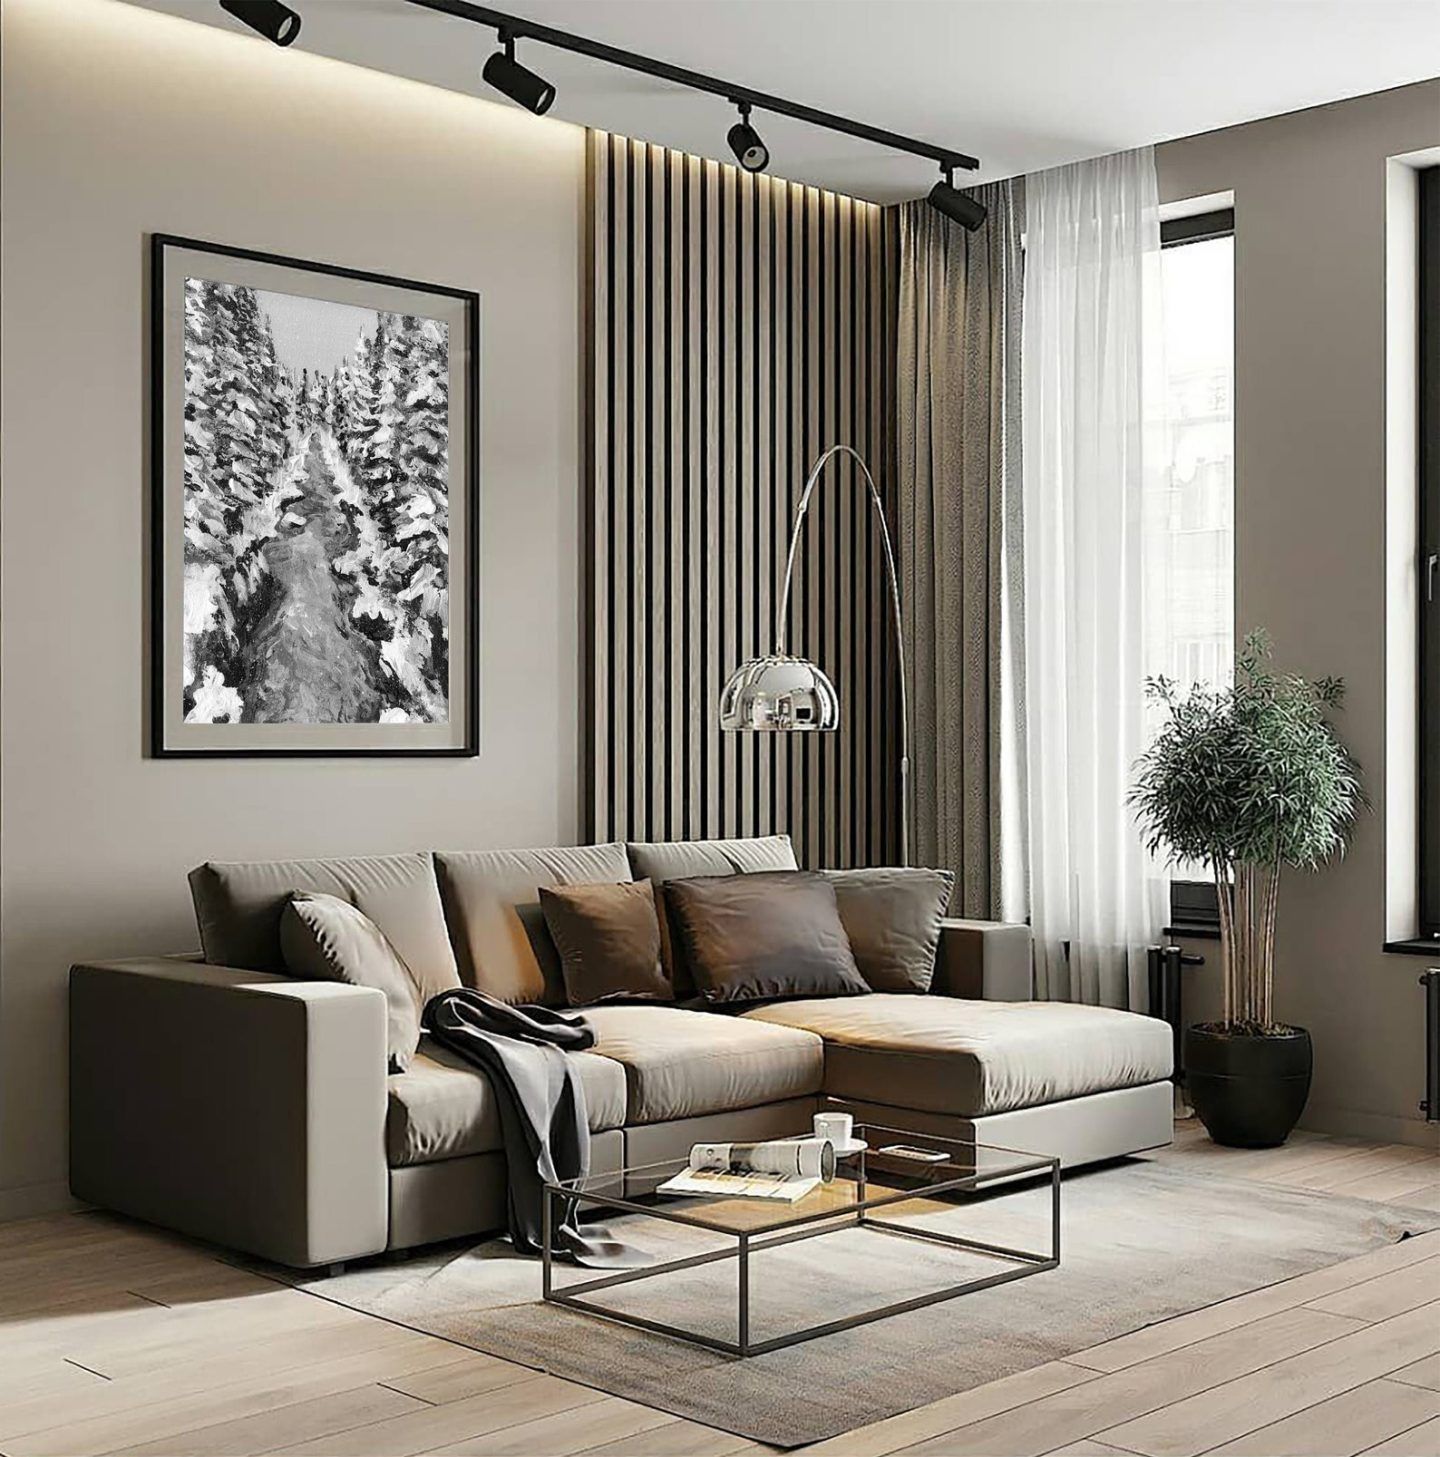 Ideas for interior design living room